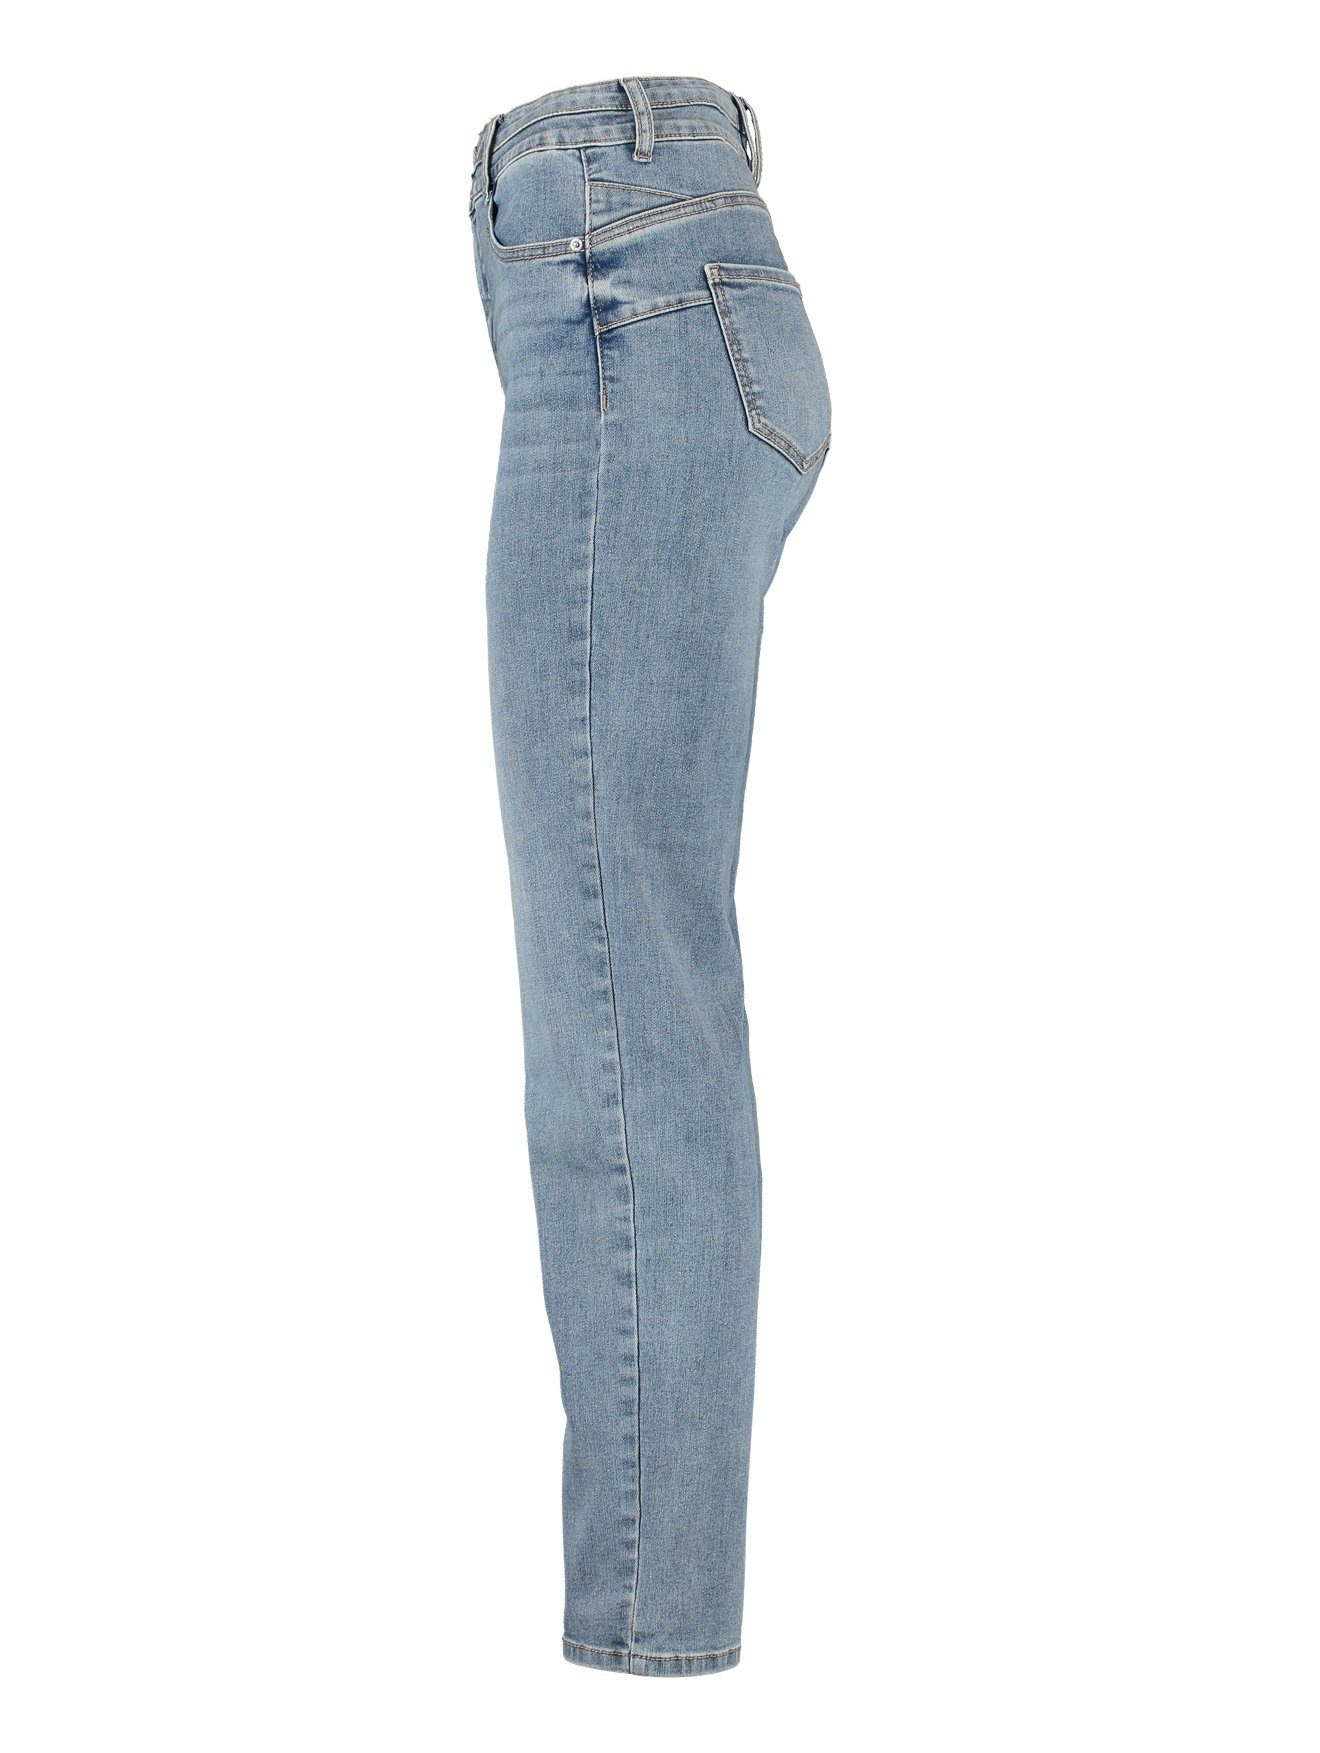 HaILYS 5-pocket jeans LG HW C JN St44rady